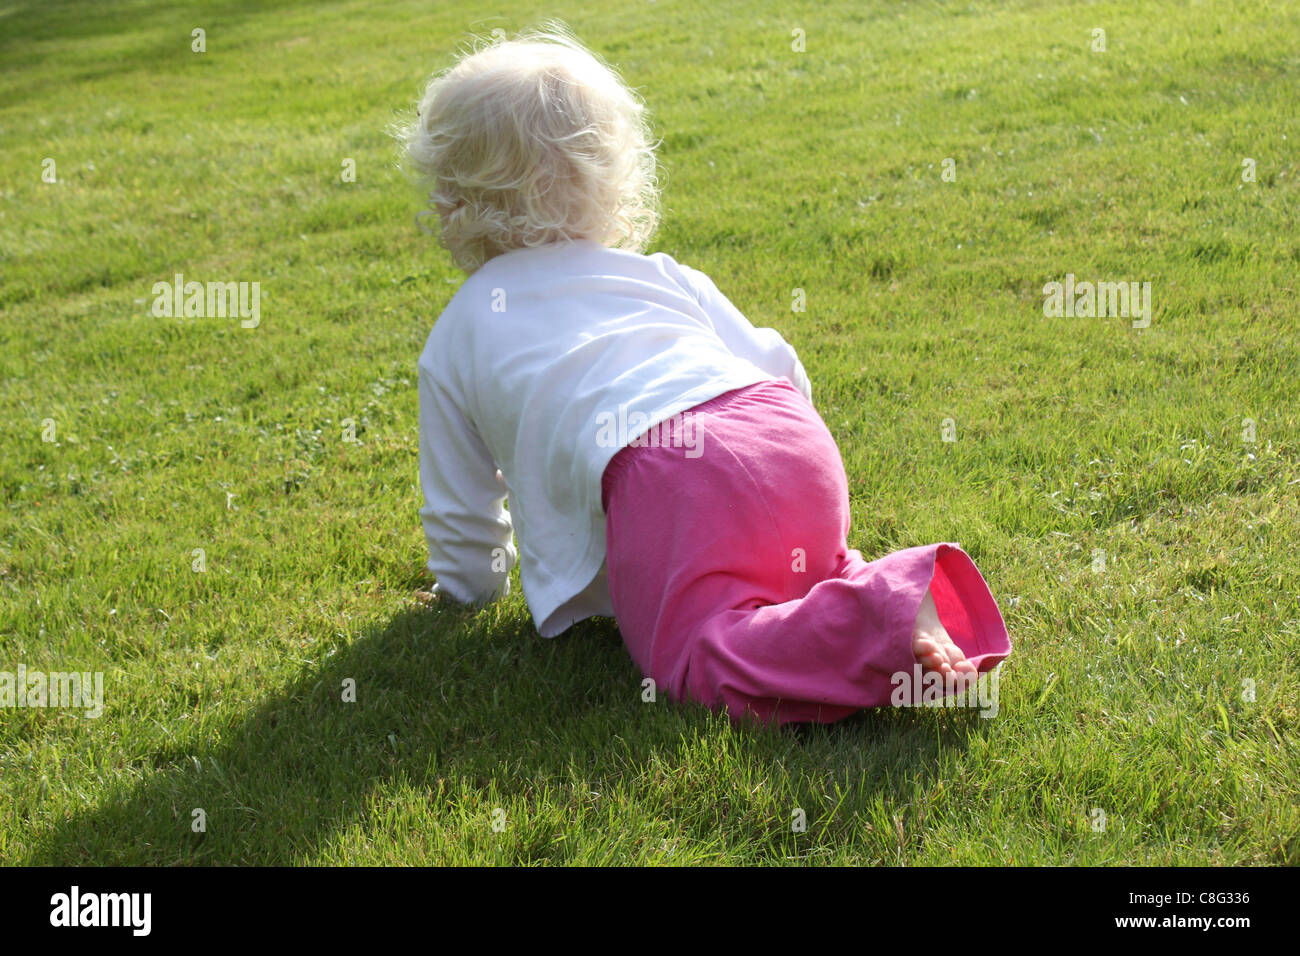 kleines Kind krabbeln auf Rasen Stockfoto